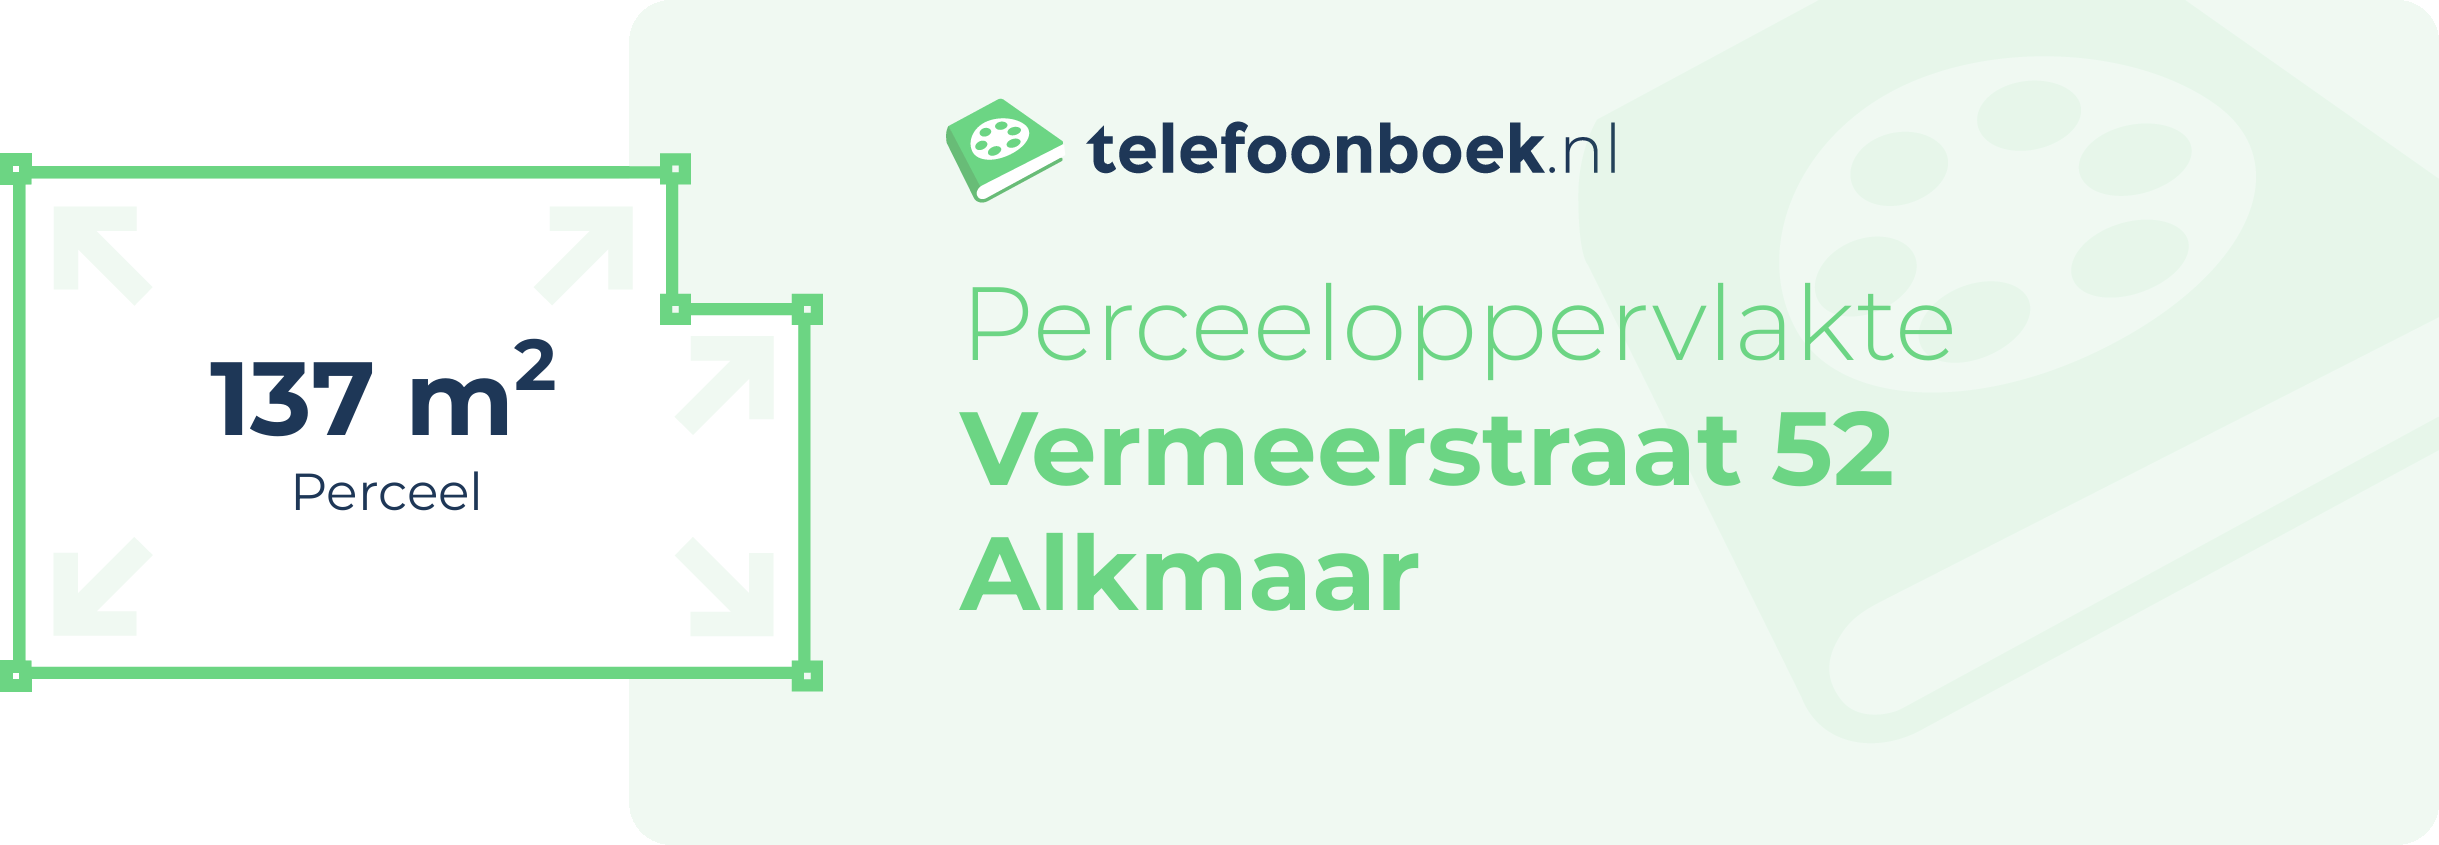 Perceeloppervlakte Vermeerstraat 52 Alkmaar